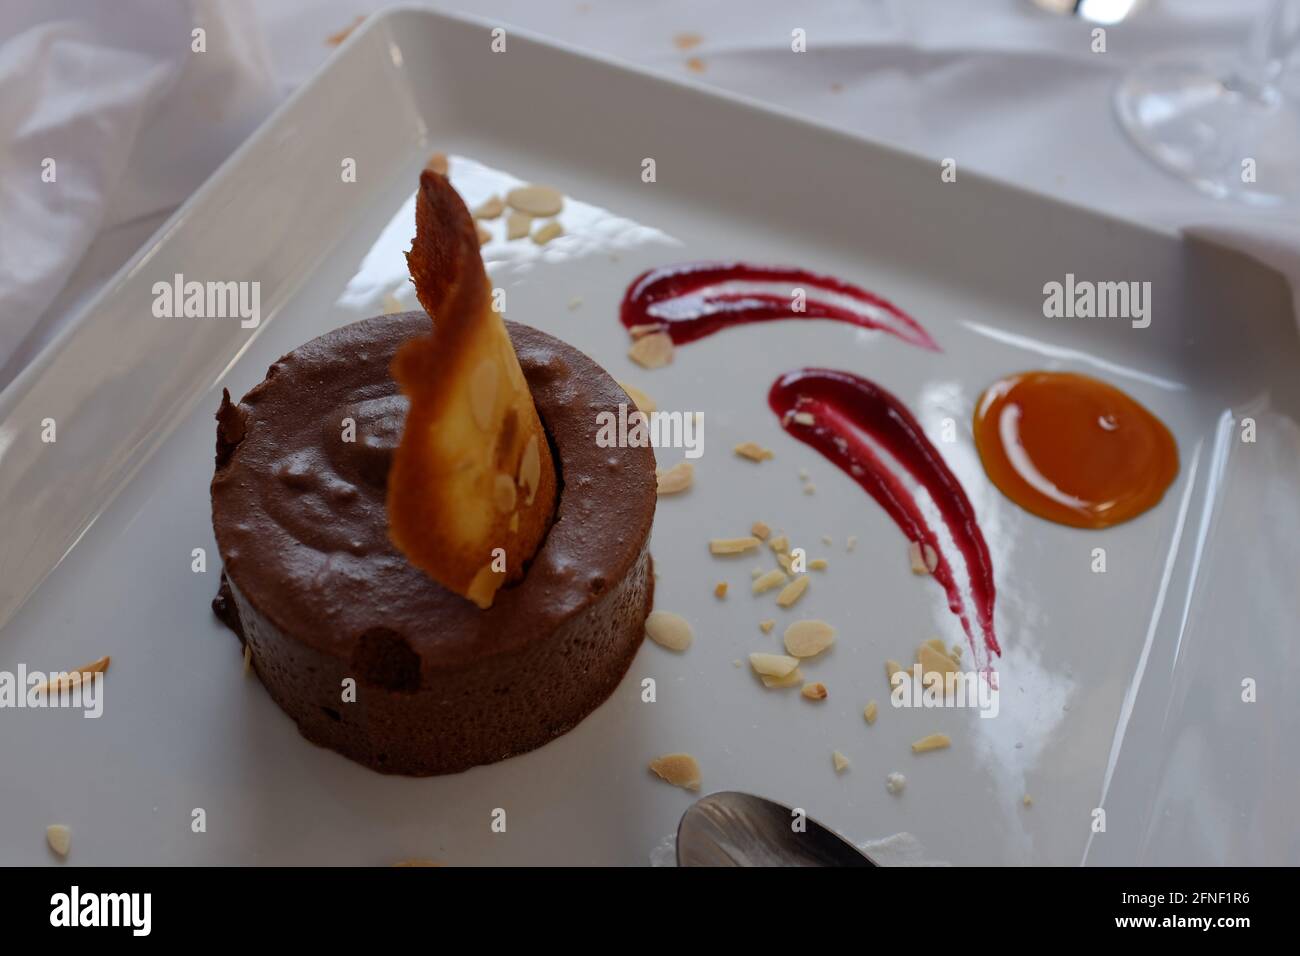 Mousse au chocolat dessert au coulis de framboise et caramel sur le côté à Toulouse, haute-Garonne, Occitanie, Sud de la France Banque D'Images